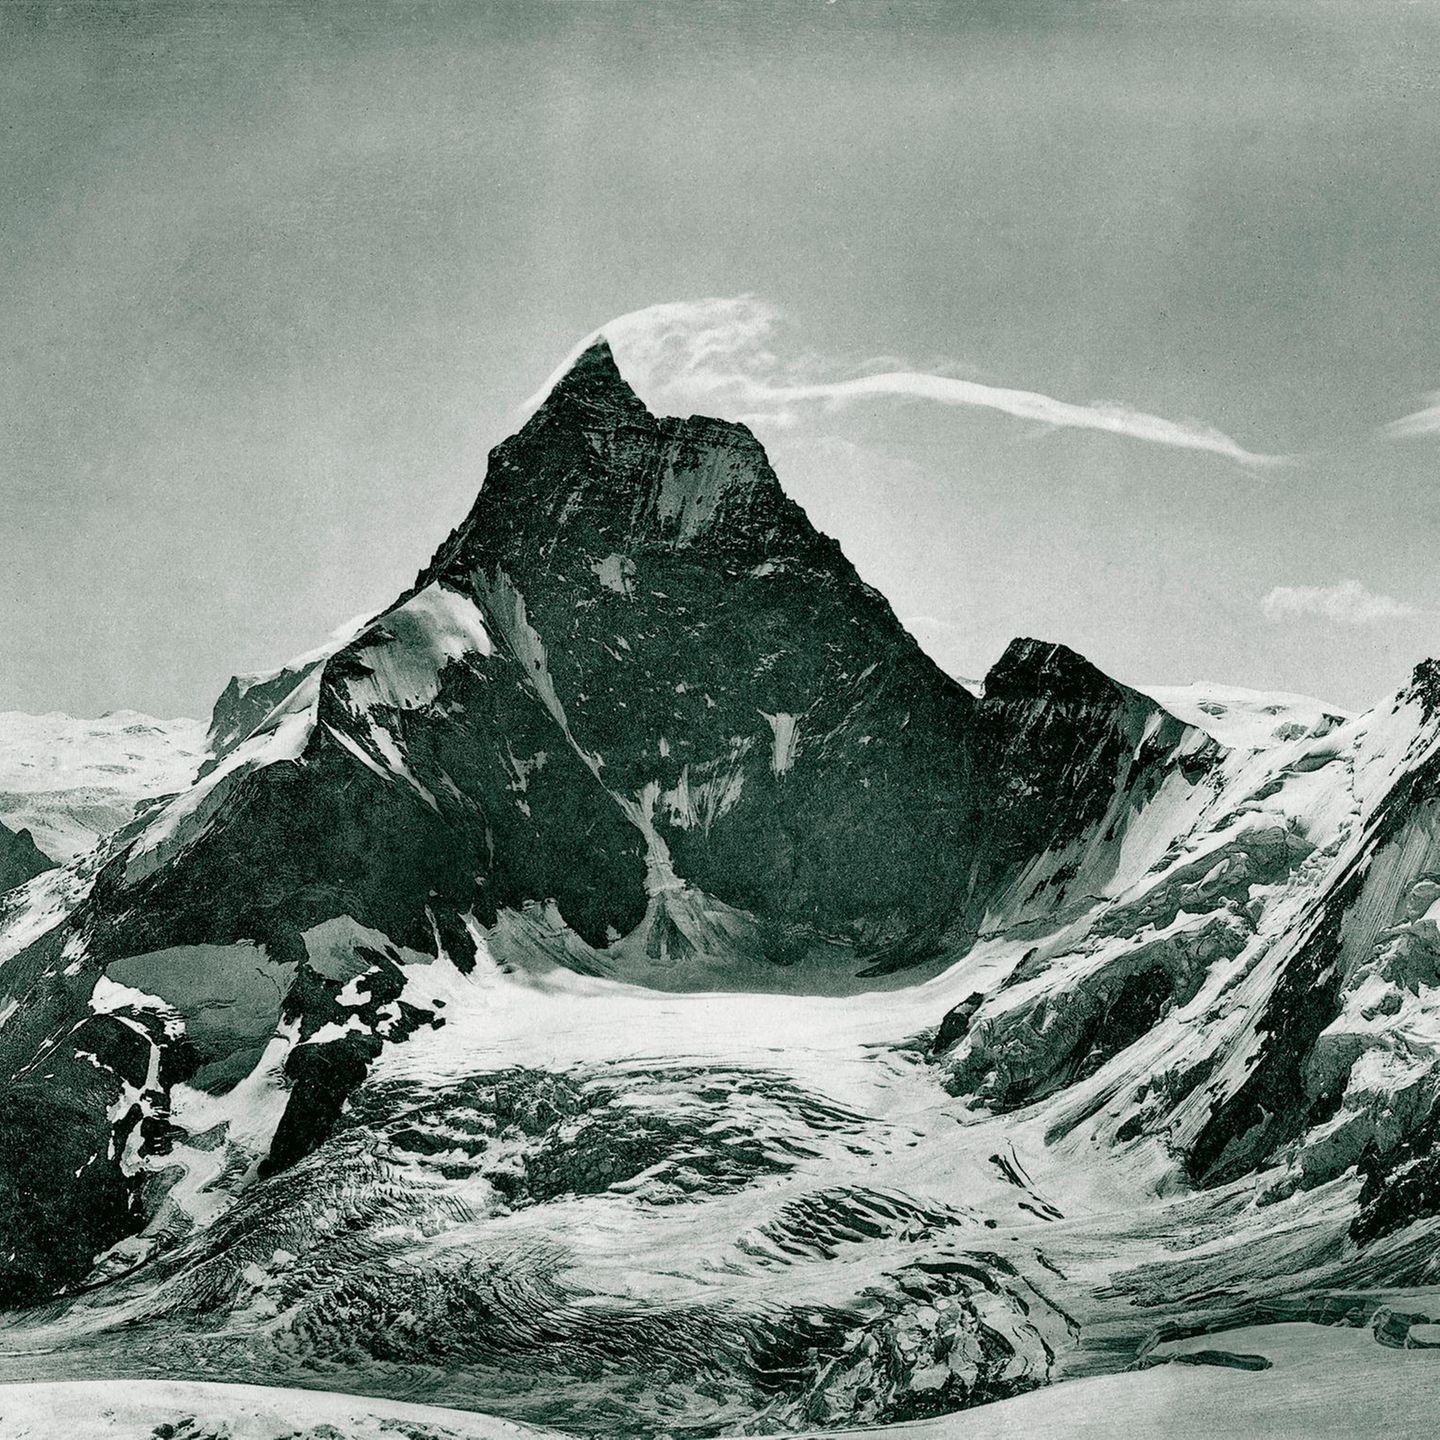 Das 4478 Meter hohe Matterhorn (hier von Norden gesehen) gilt lange als unbezwingbar. Etliche Schweizer halten den Gipfel für verflucht